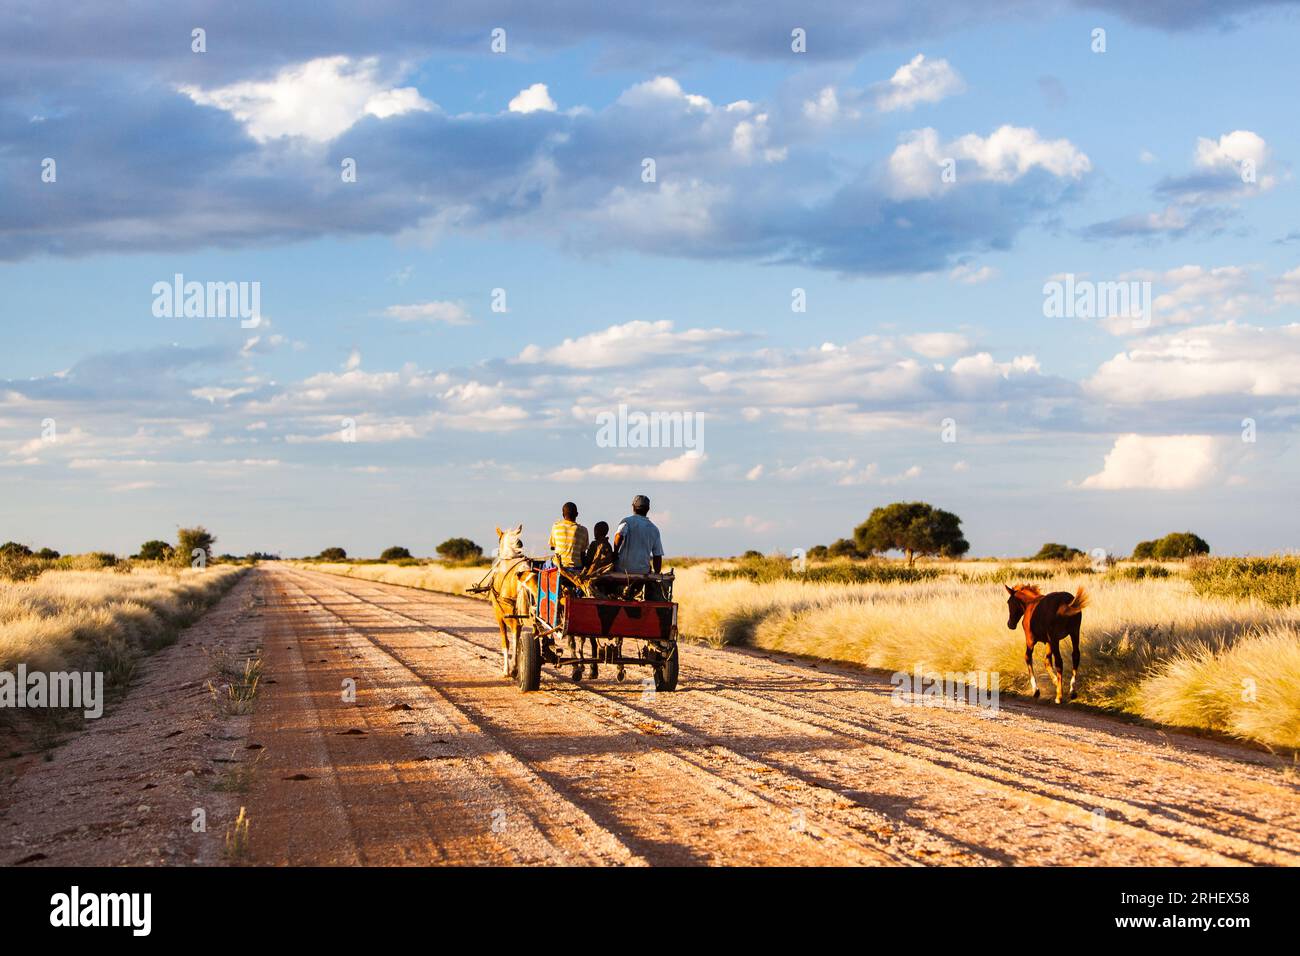 Transport en calèche tirée par des chevaux sur une route rurale de gravier avec un ciel bleu et des nuages gonflés en Namibie rurale pays en développement pauvre Afrique Banque D'Images